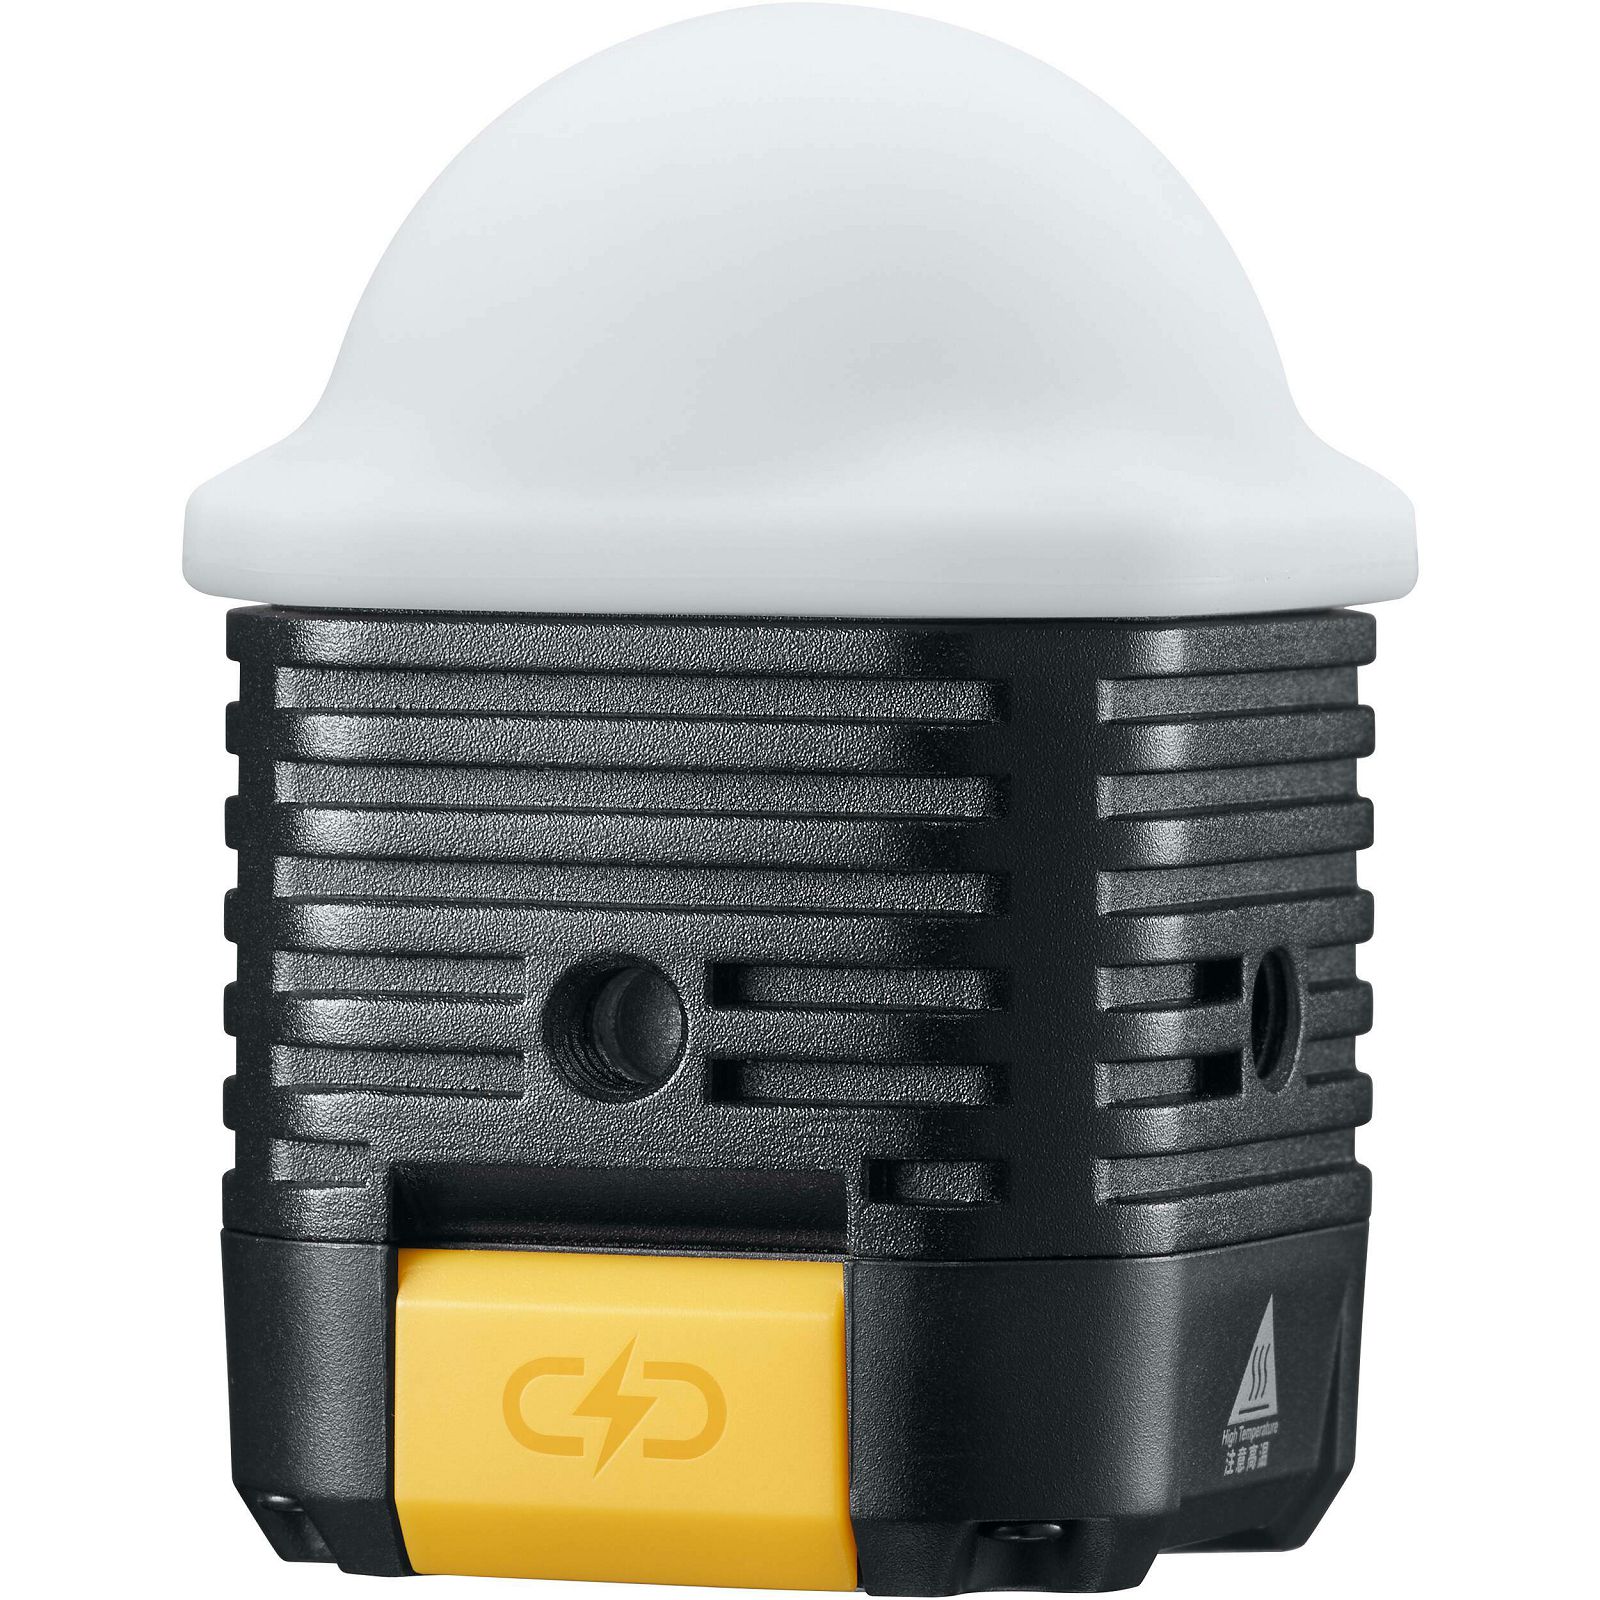 Godox WL4B waterproof LED lamp vodootporna rasvjeta